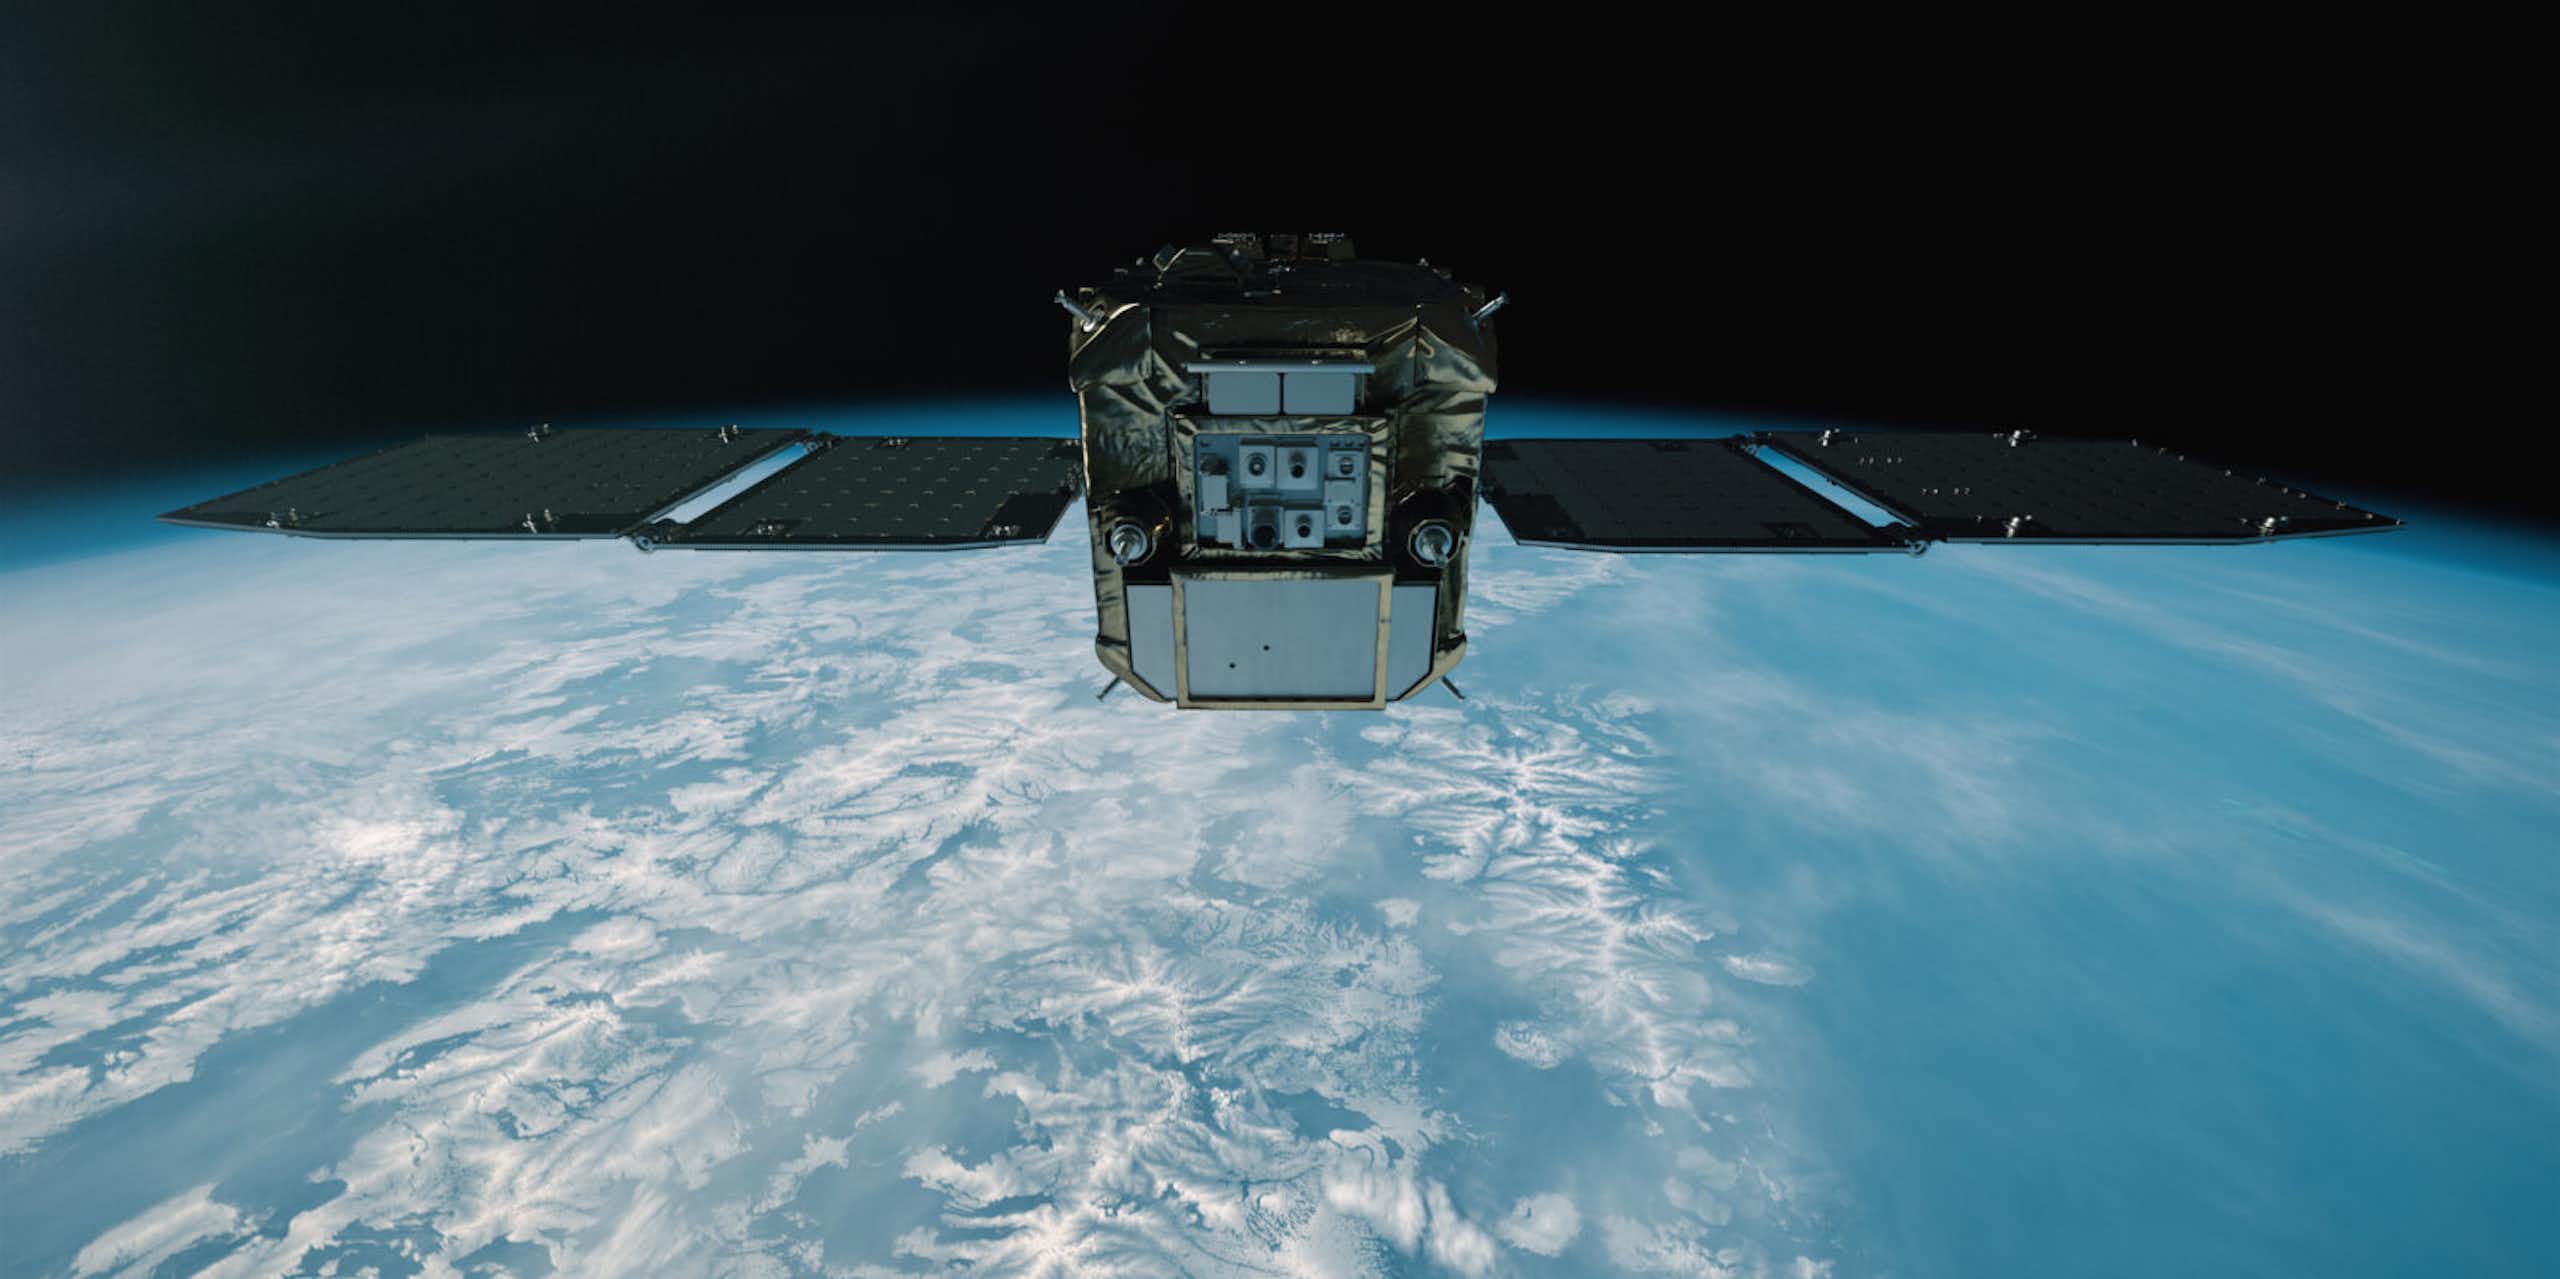 Vista artística del satélite ADRAS-J en órbita sobre la Tierra.